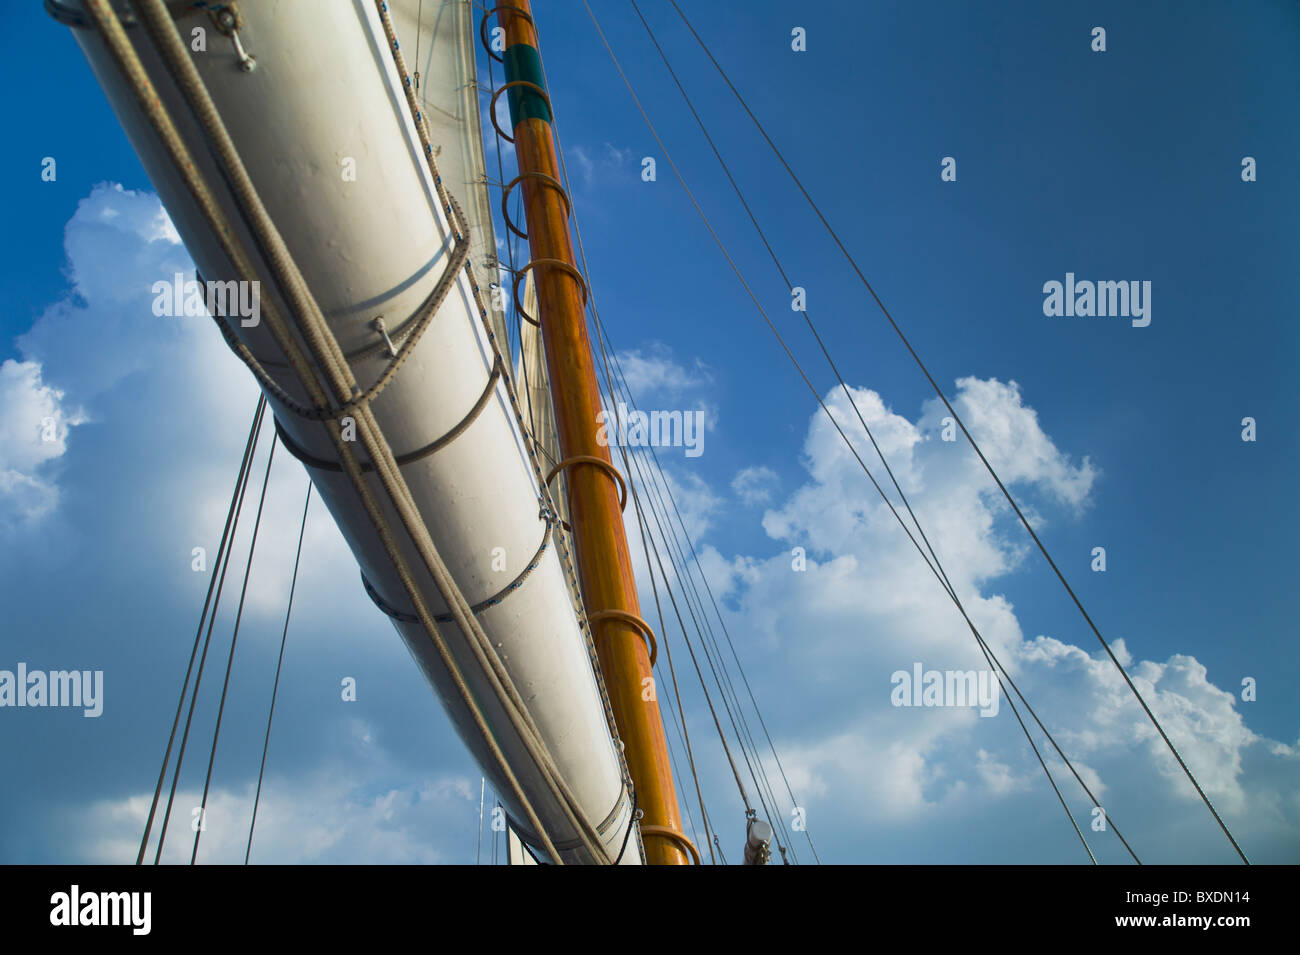 Sail on schooner Stock Photo